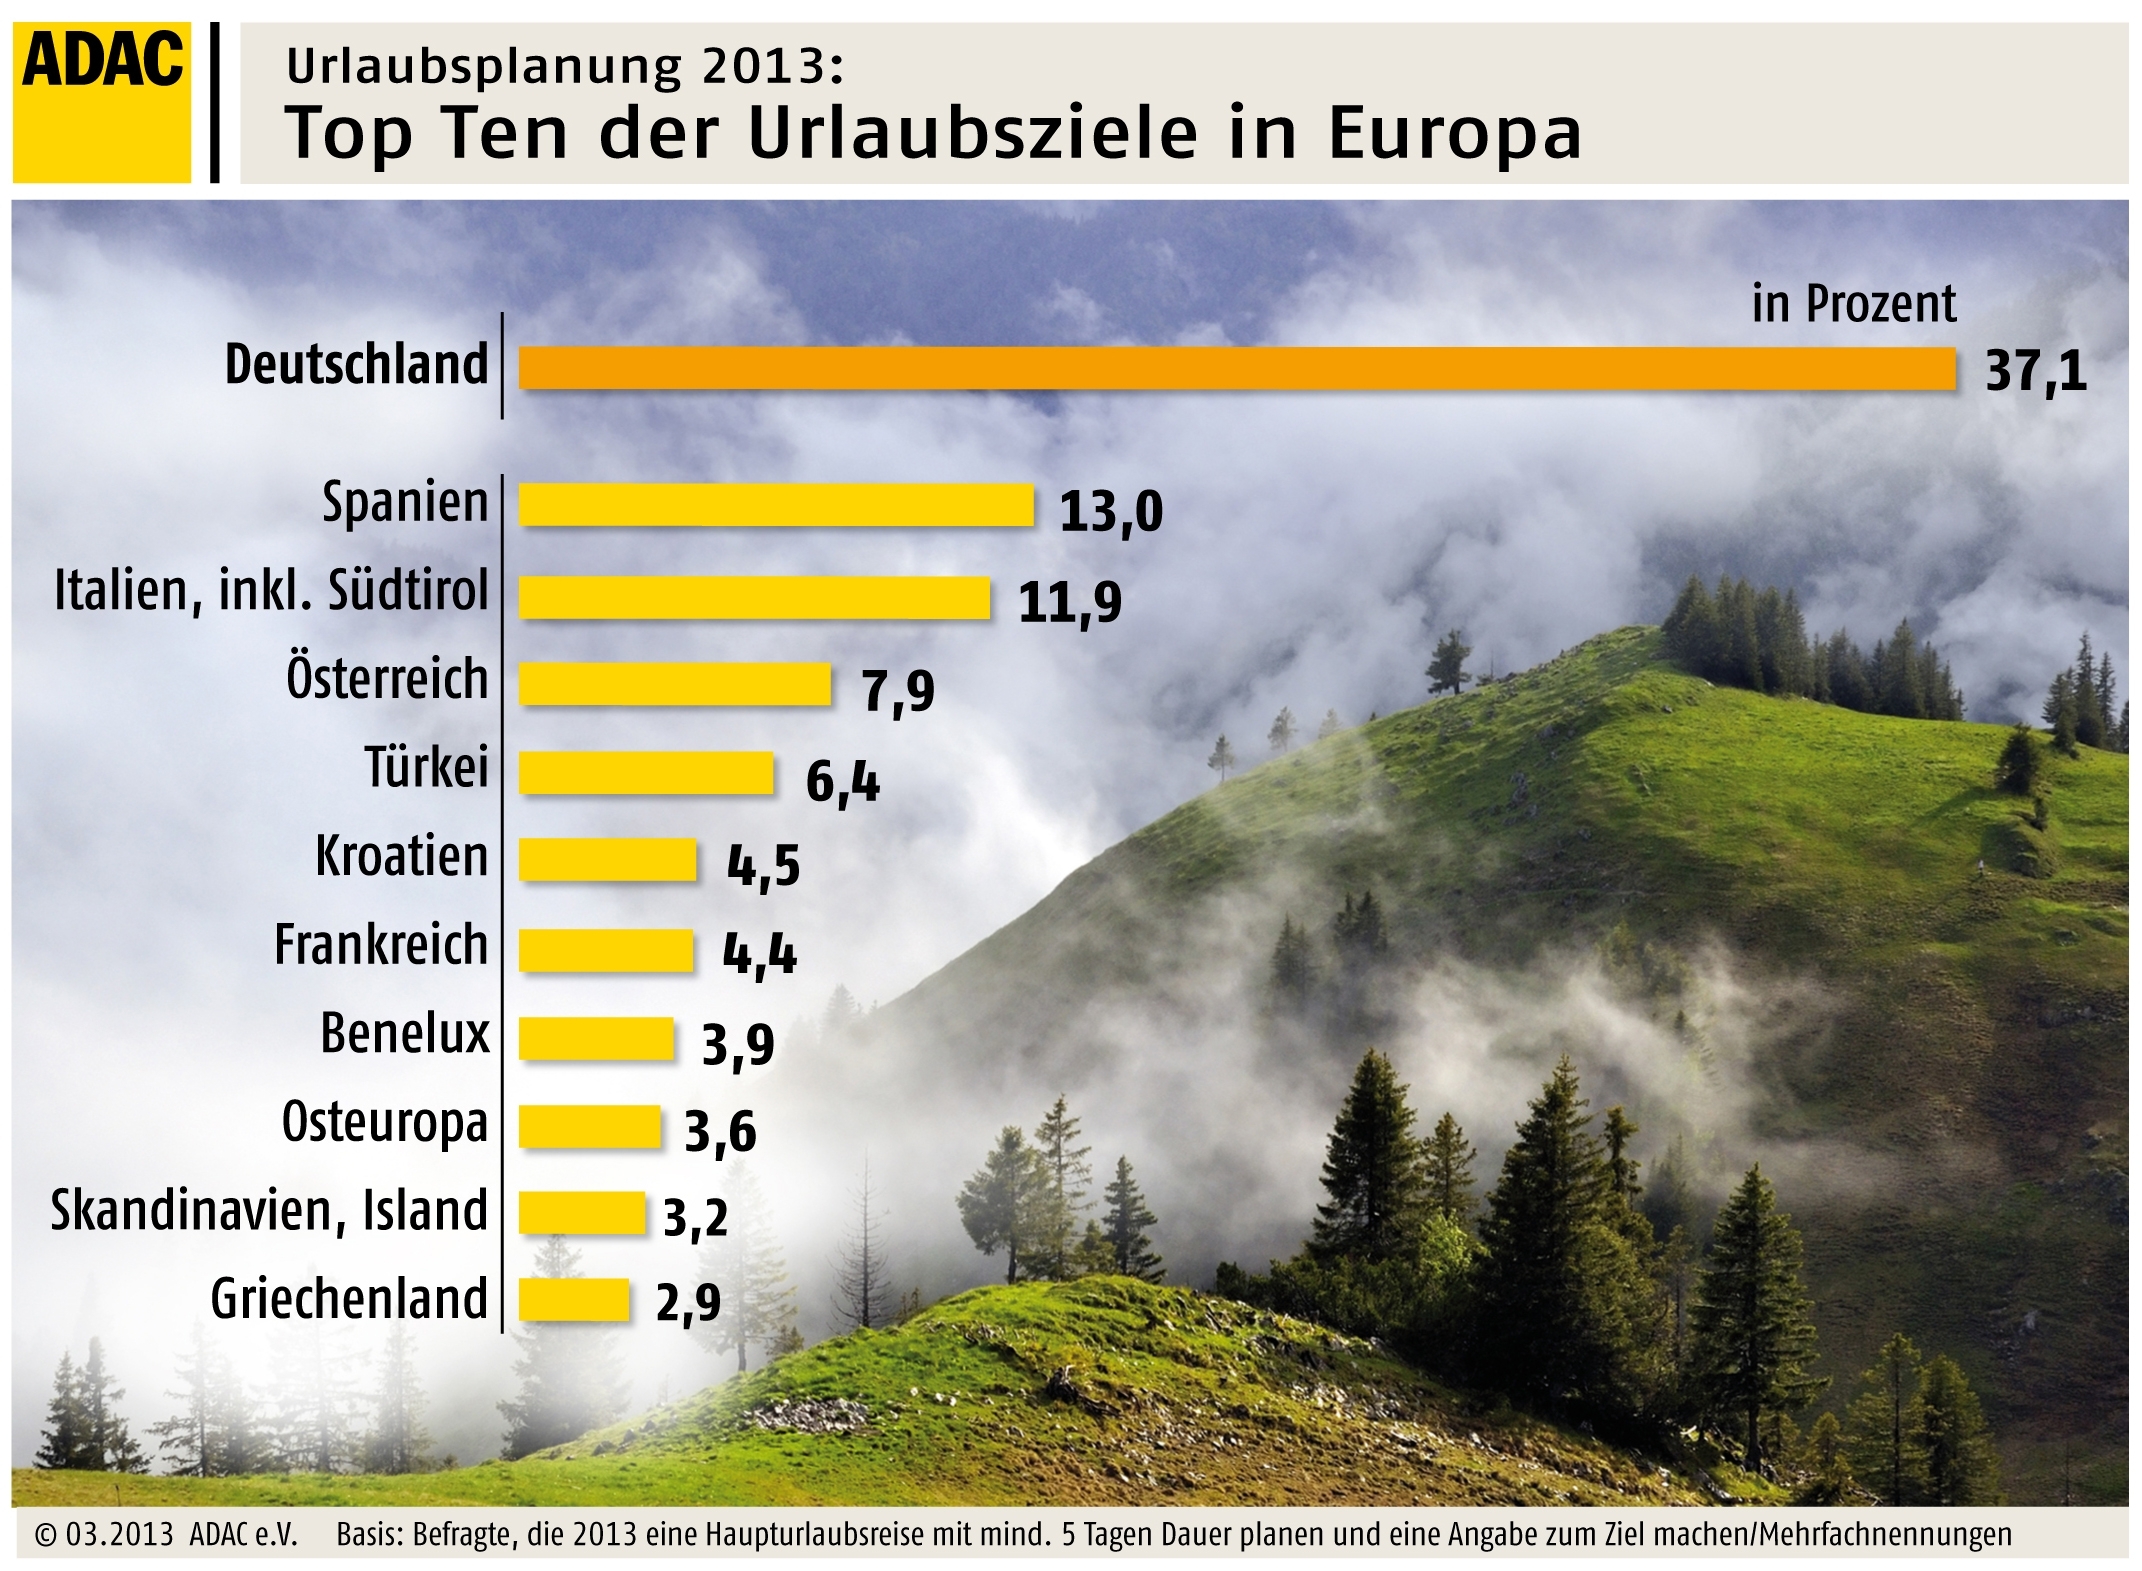 Urlaubsplanung 2013 - Top Ten der Urlaubsziele in Europa